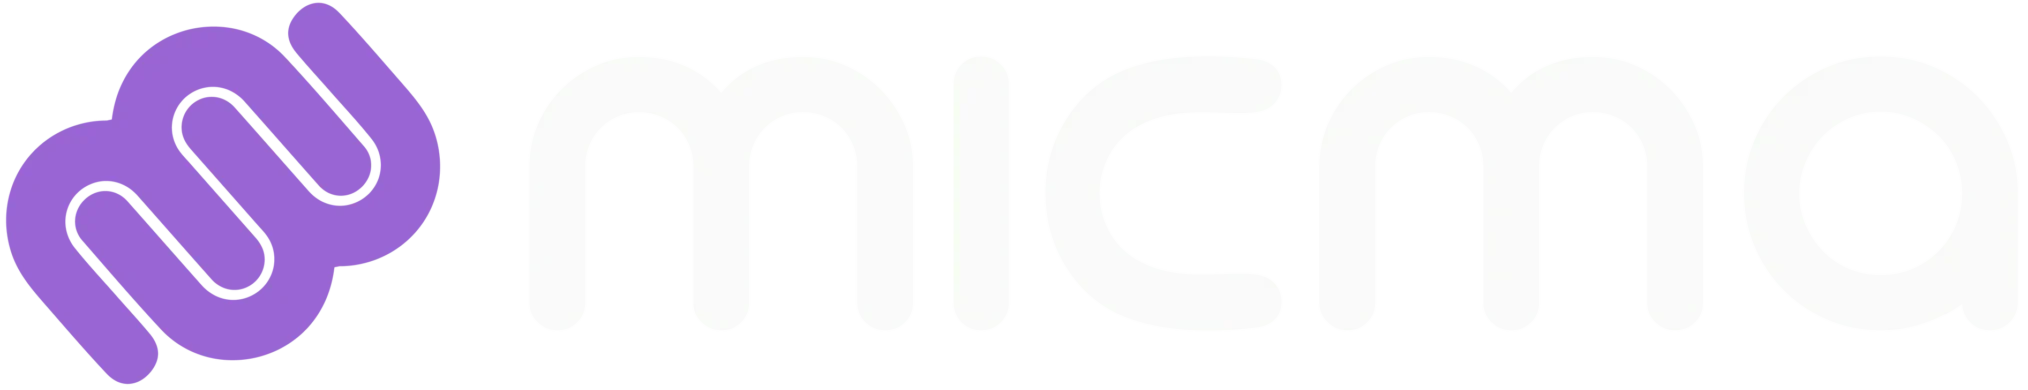 Micma main logo